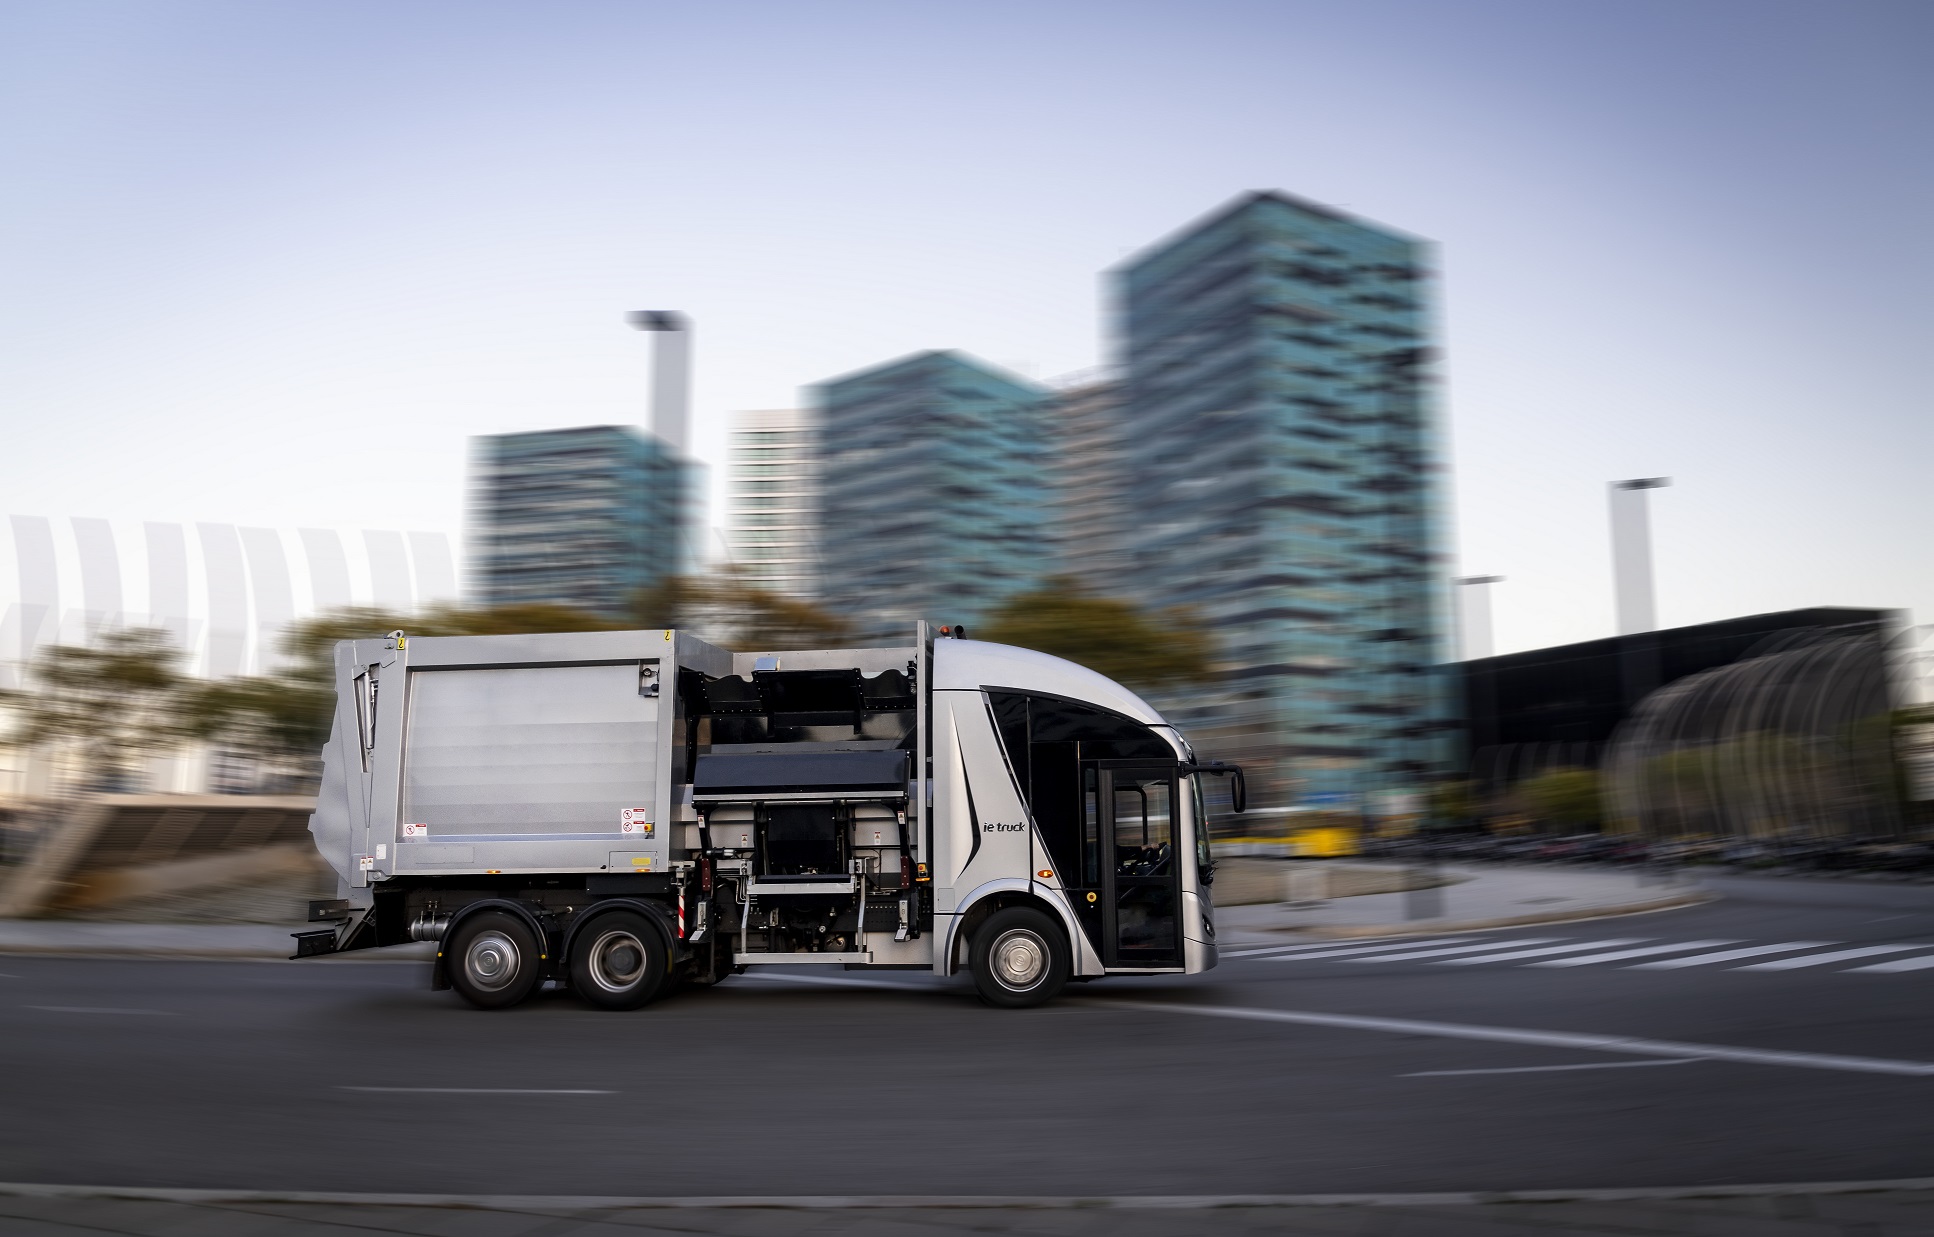 FCC Medio Ambiente et Irizar ont convenu de produire les 10 premiers camions électriques Irizar ie urban truck